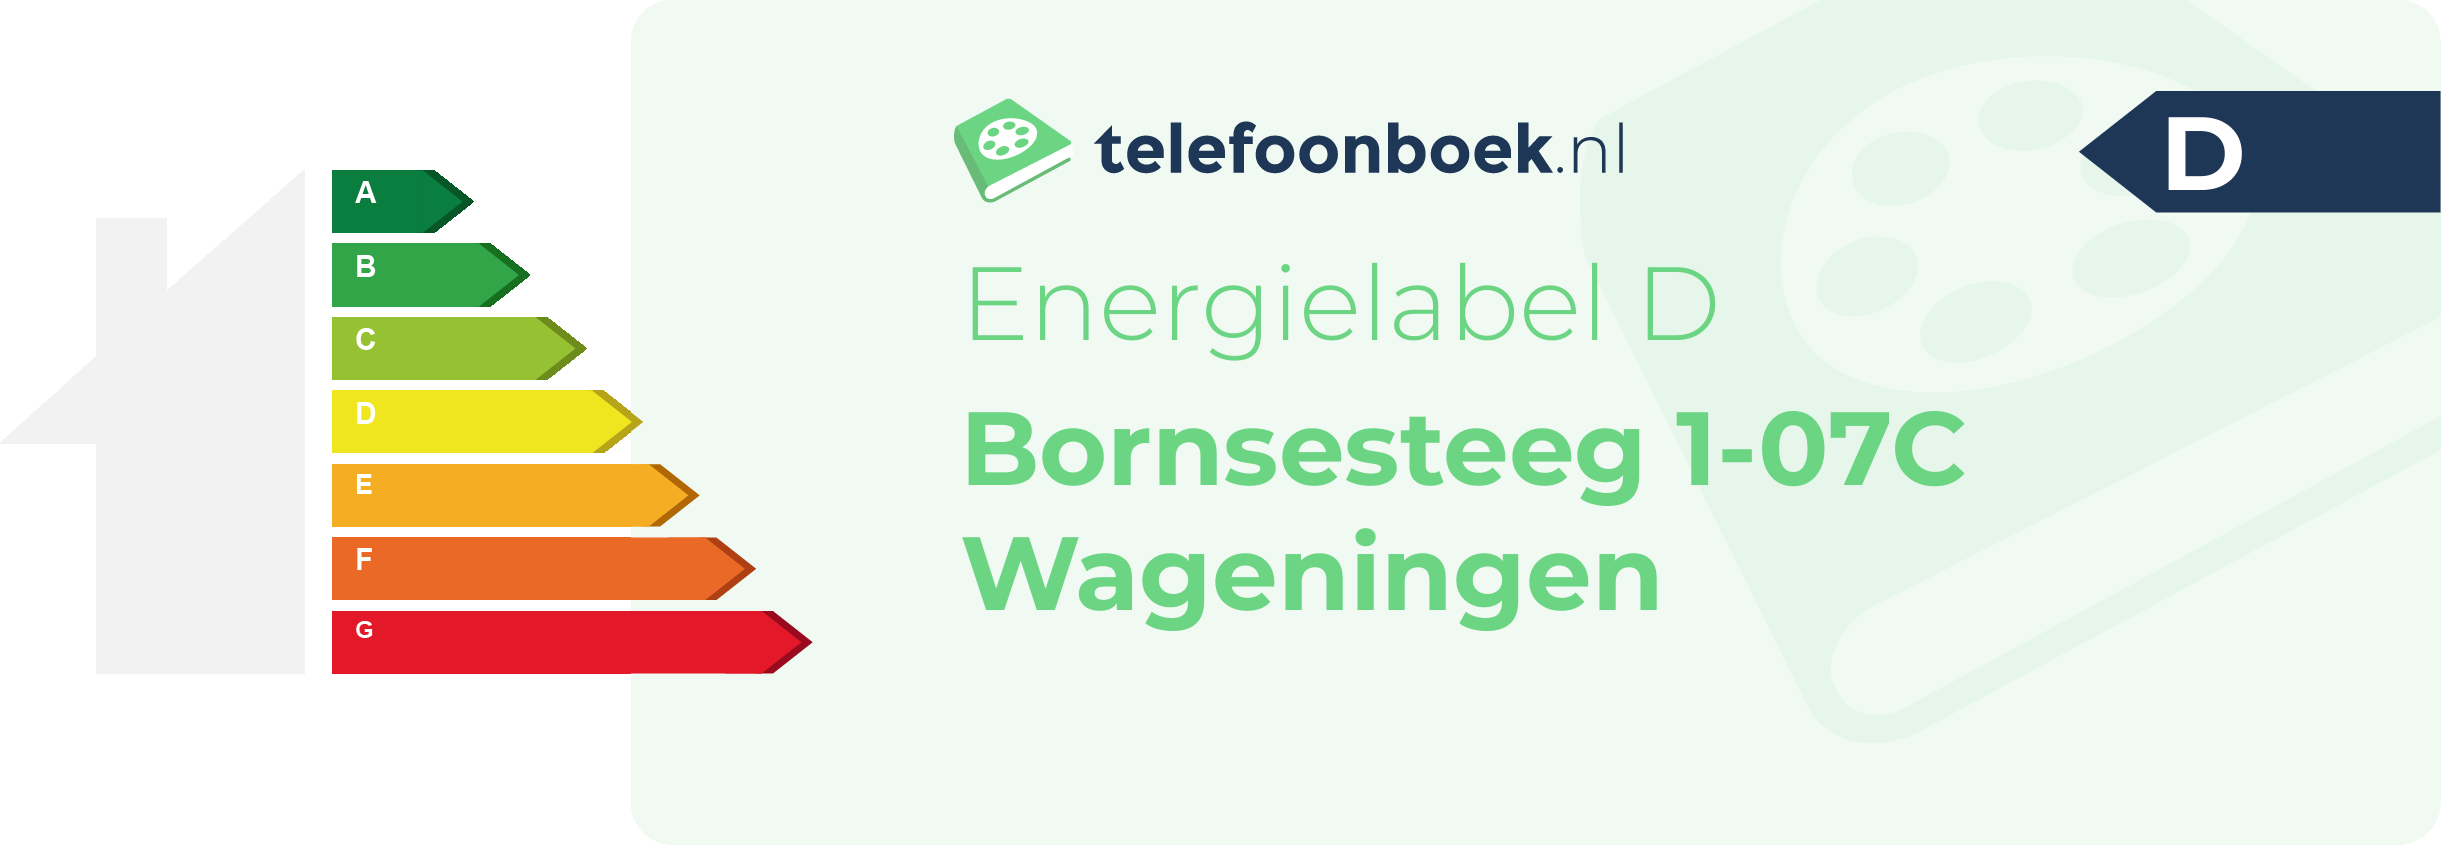 Energielabel Bornsesteeg 1-07C Wageningen